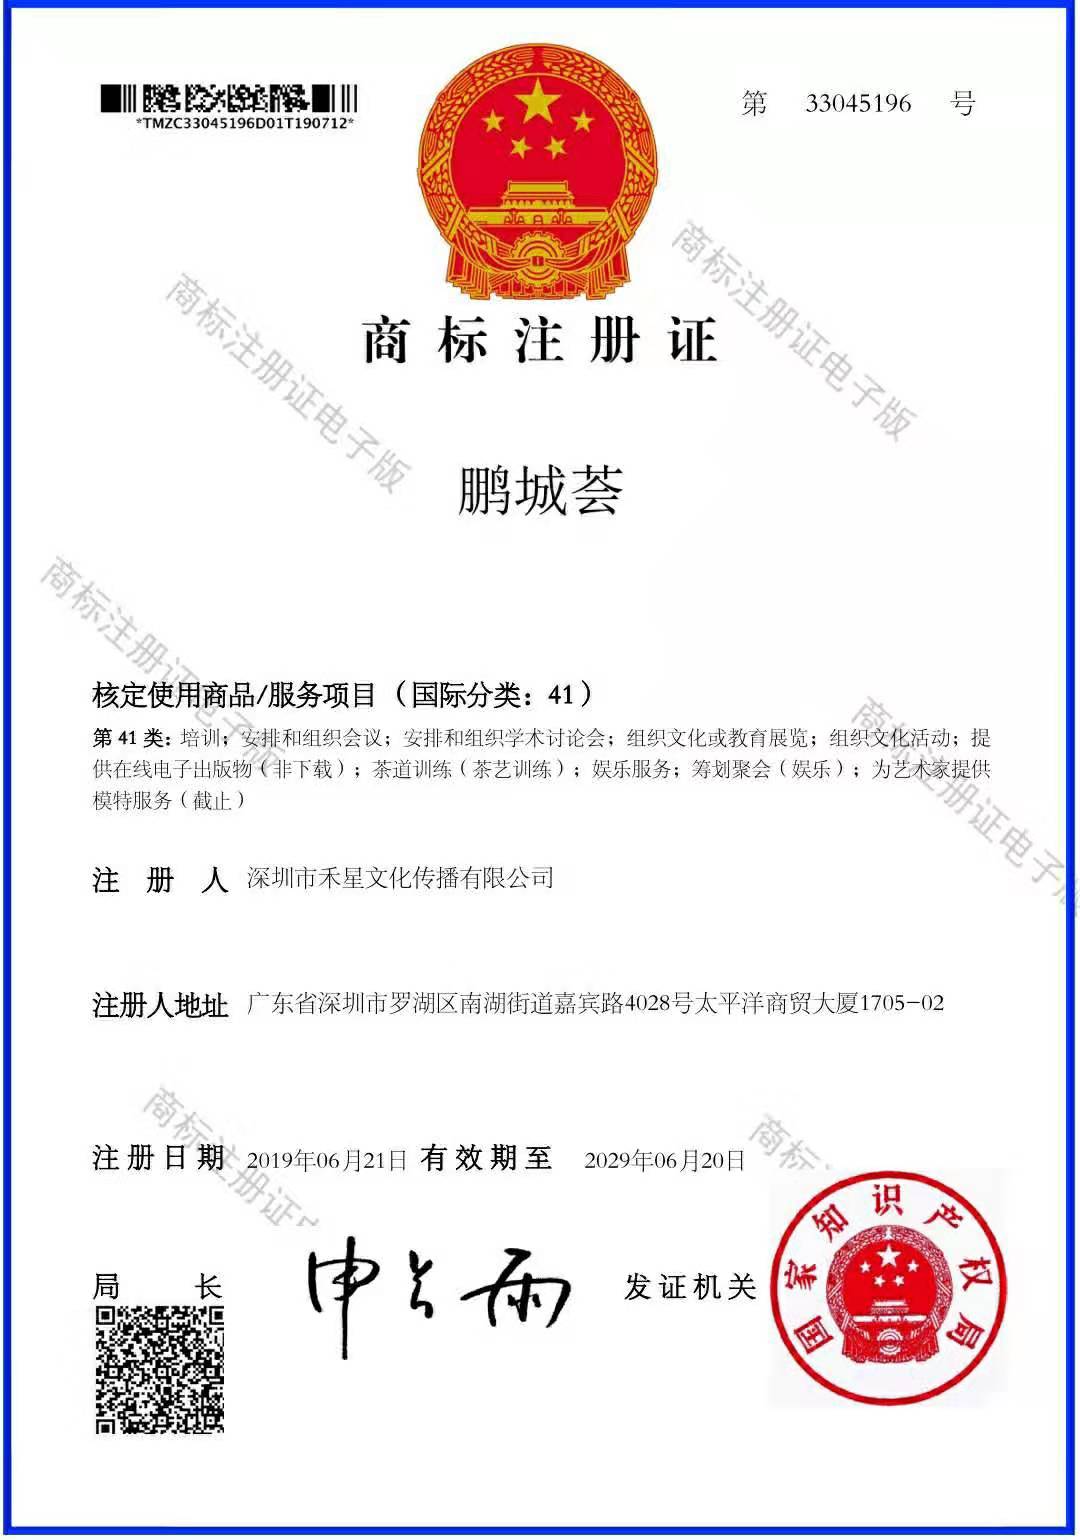 喜讯!"鹏城荟"商标已通过国家知识产权局审核并颁发证书